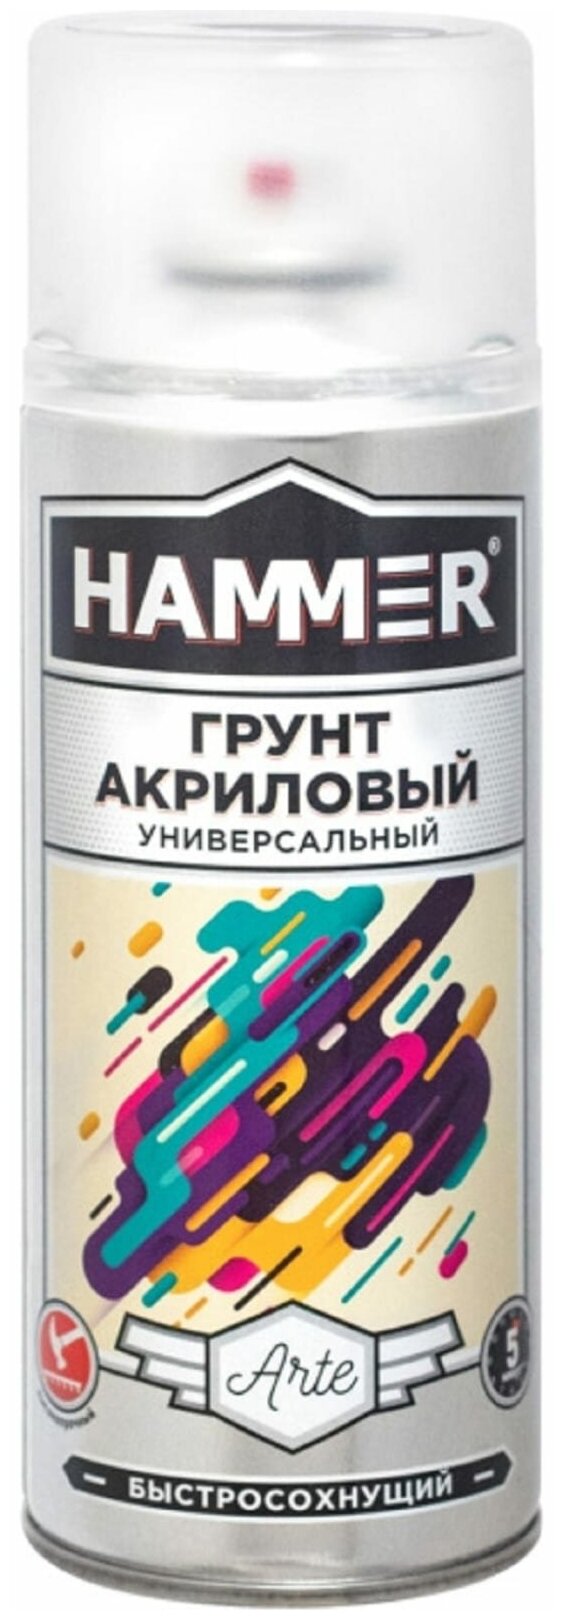 Грунт акриловый HAMMER черный 0,52 л